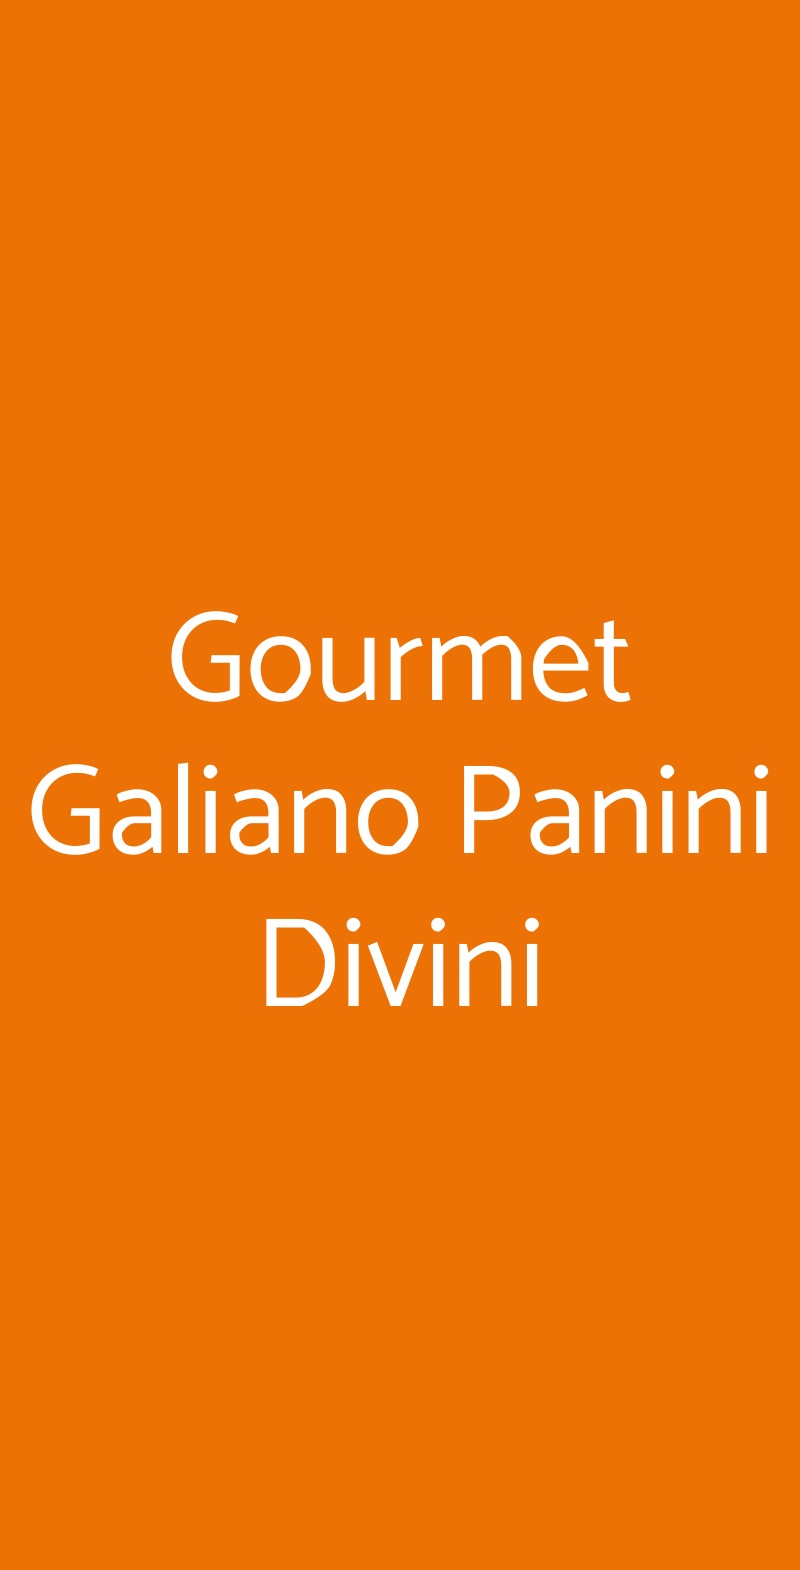 Gourmet Galiano Panini Divini Milano menù 1 pagina